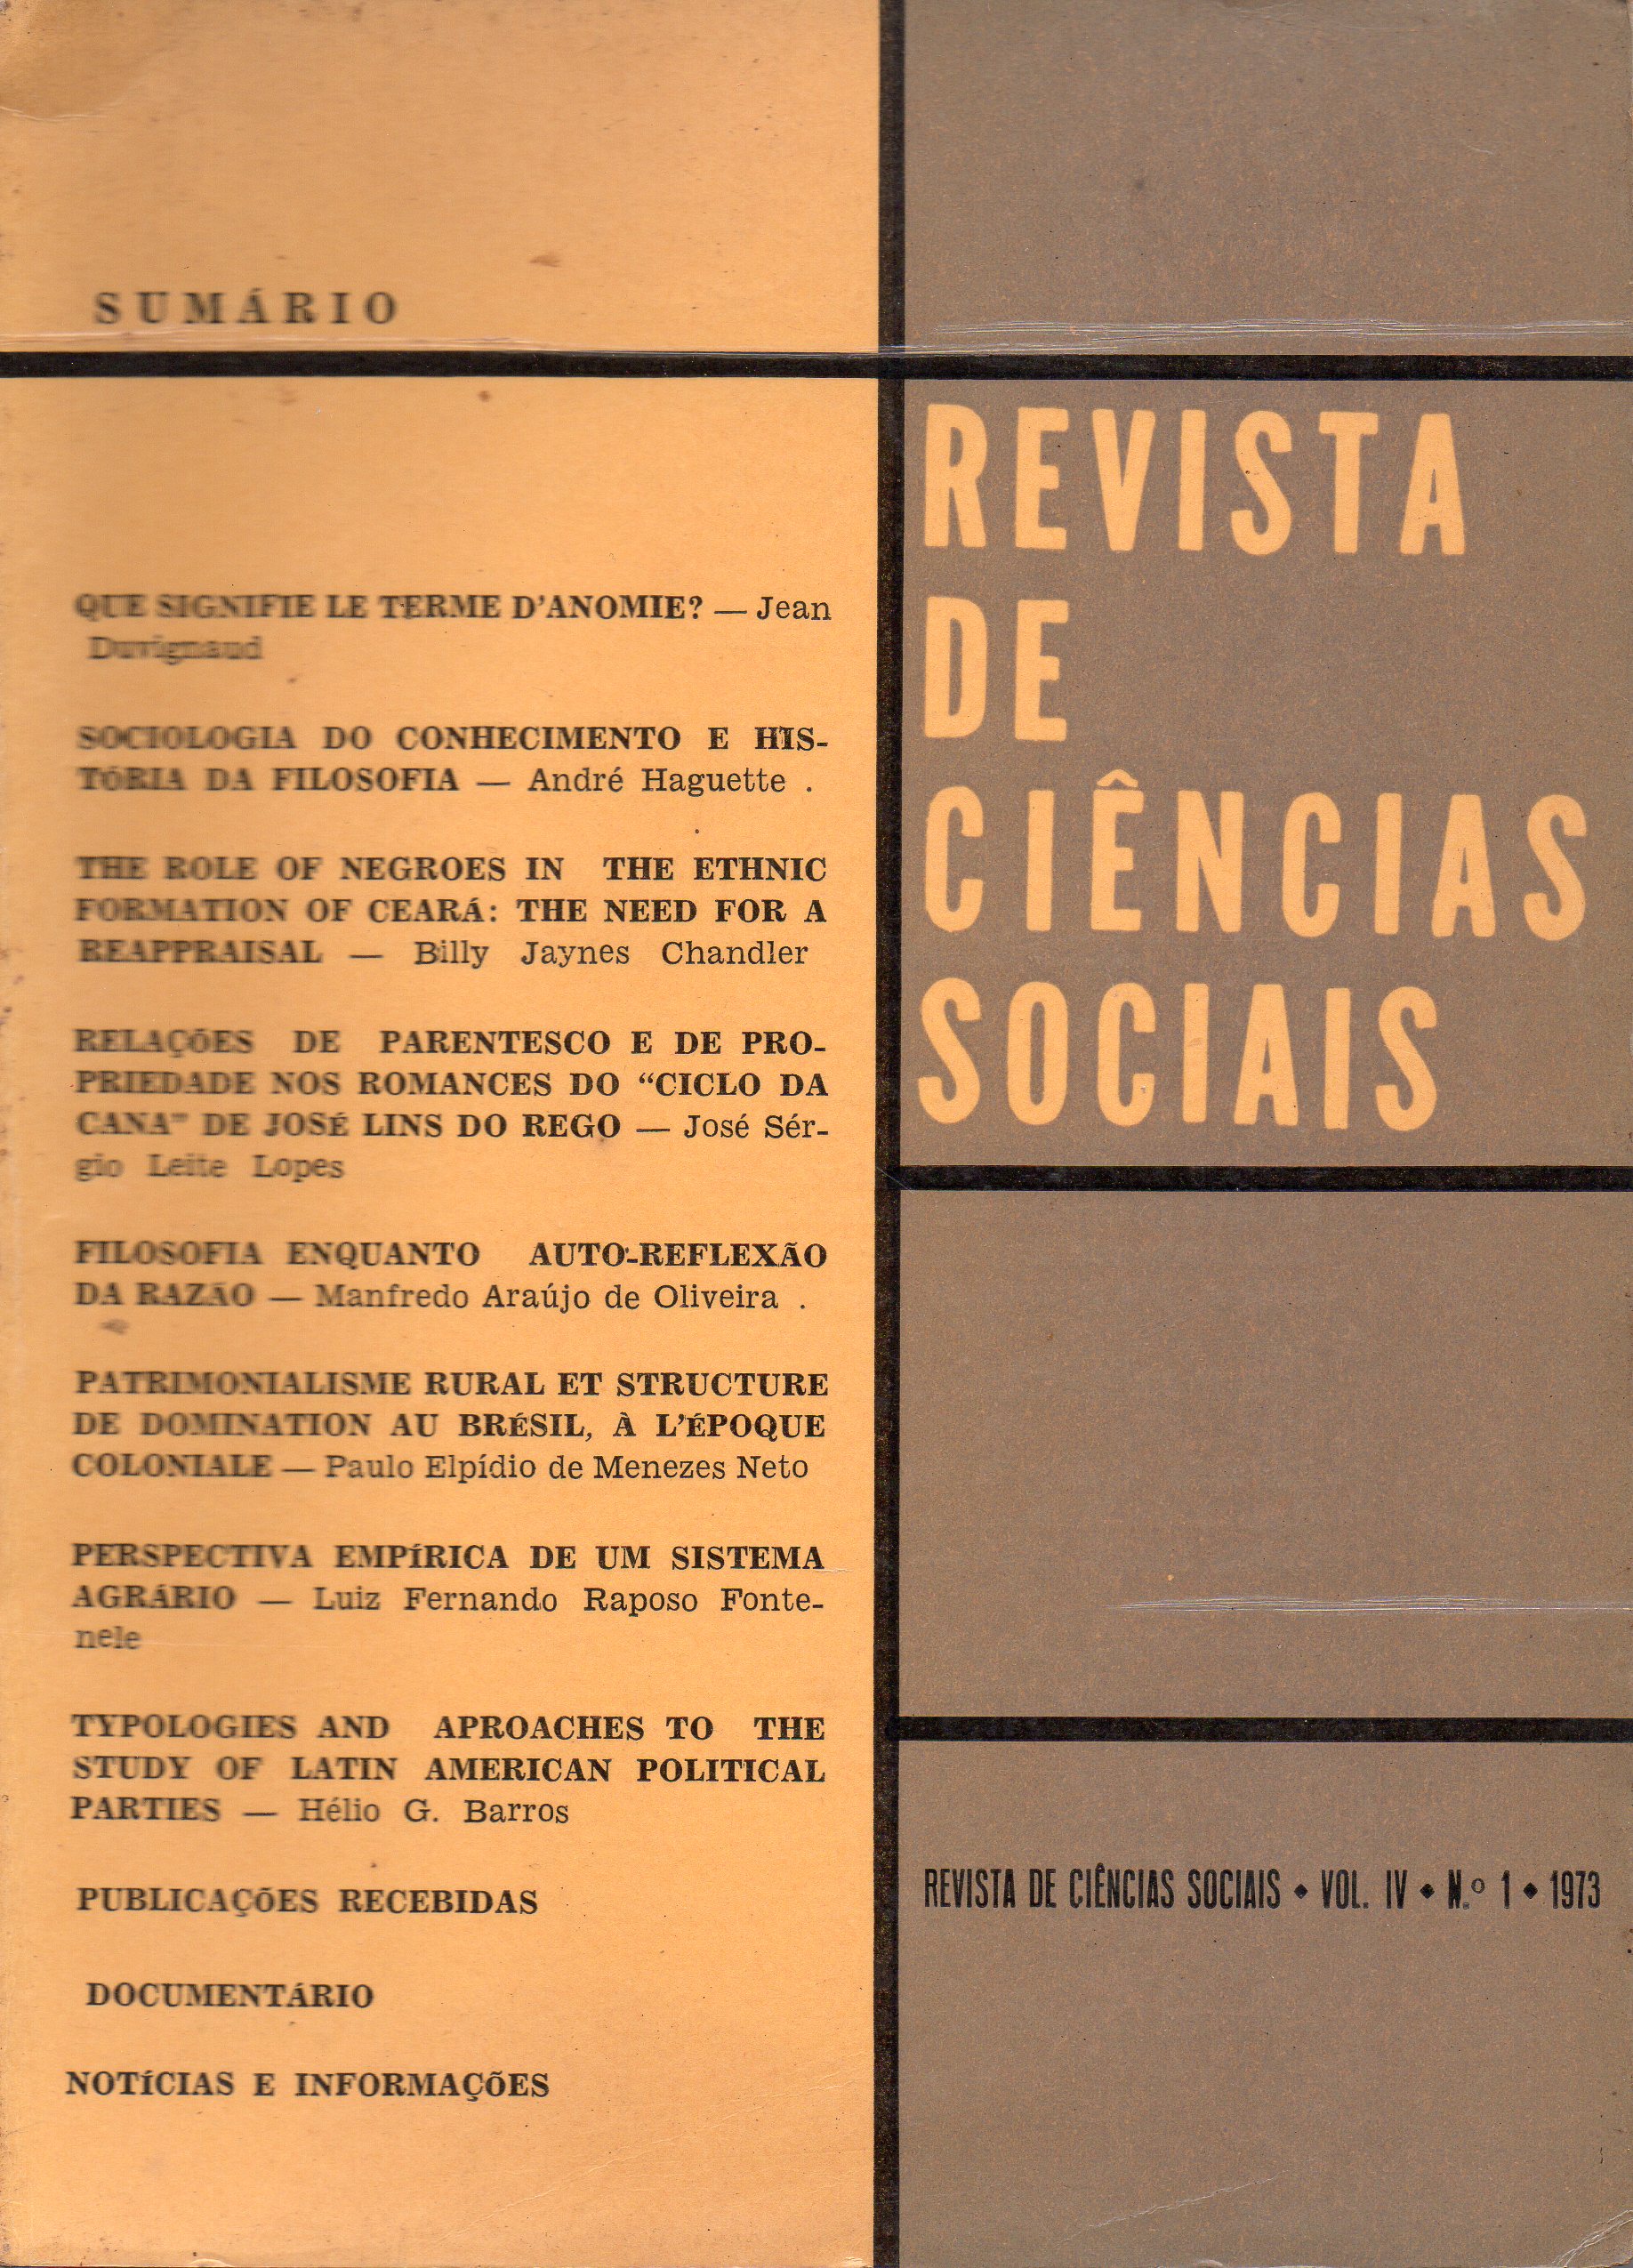 					Ver Vol. 4 Núm. 1 (1973): Revista de Ciências Sociais
				